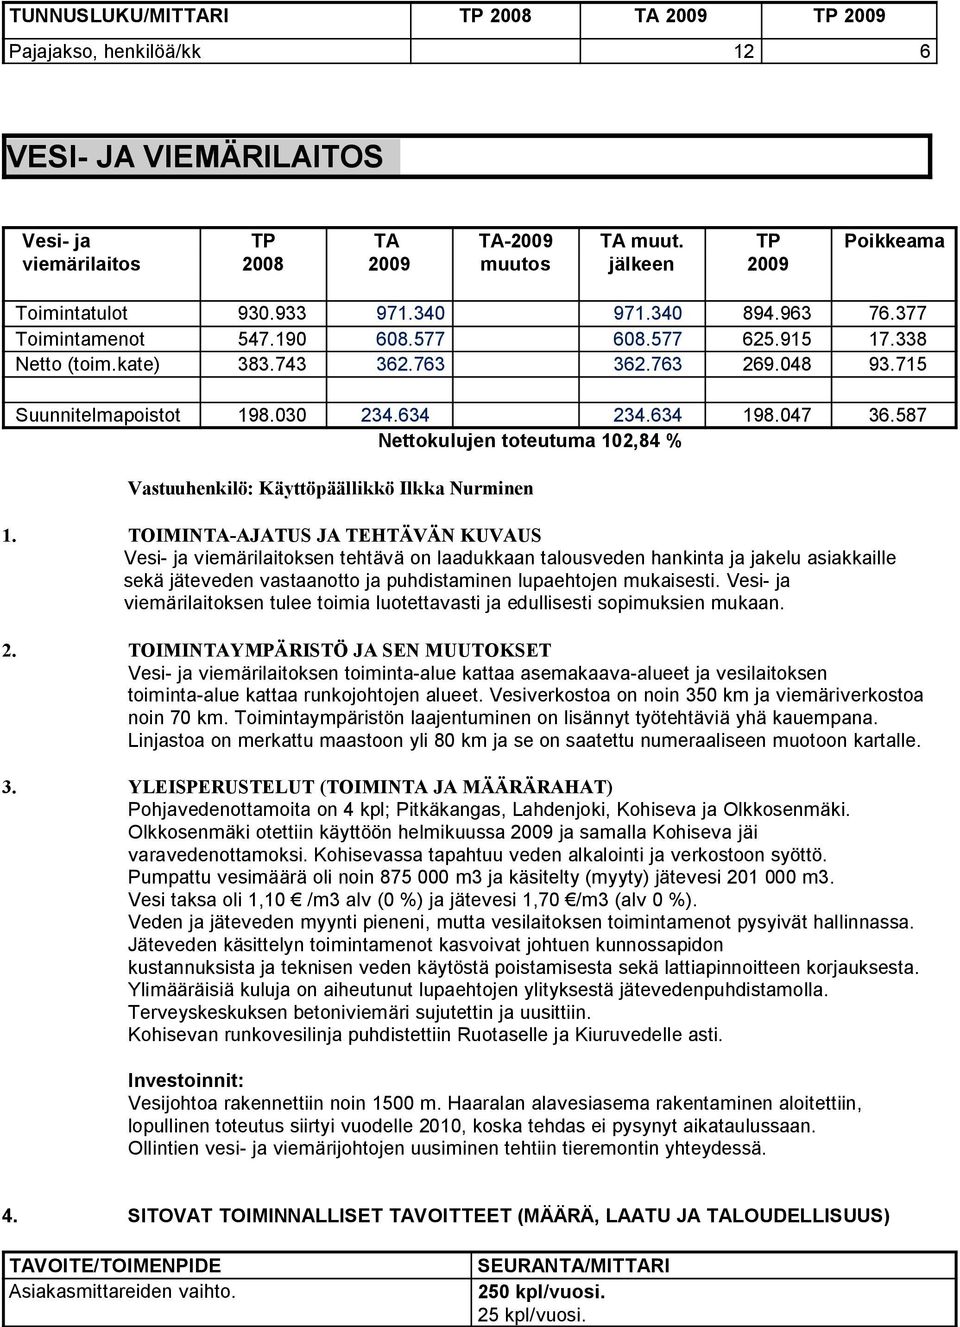 587 Nettokulujen toteutuma 102,84 % Vastuuhenkilö: Käyttöpäällikkö Ilkka Nurminen Vesi- ja viemärilaitoksen tehtävä on laadukkaan talousveden hankinta ja jakelu asiakkaille sekä jäteveden vastaanotto